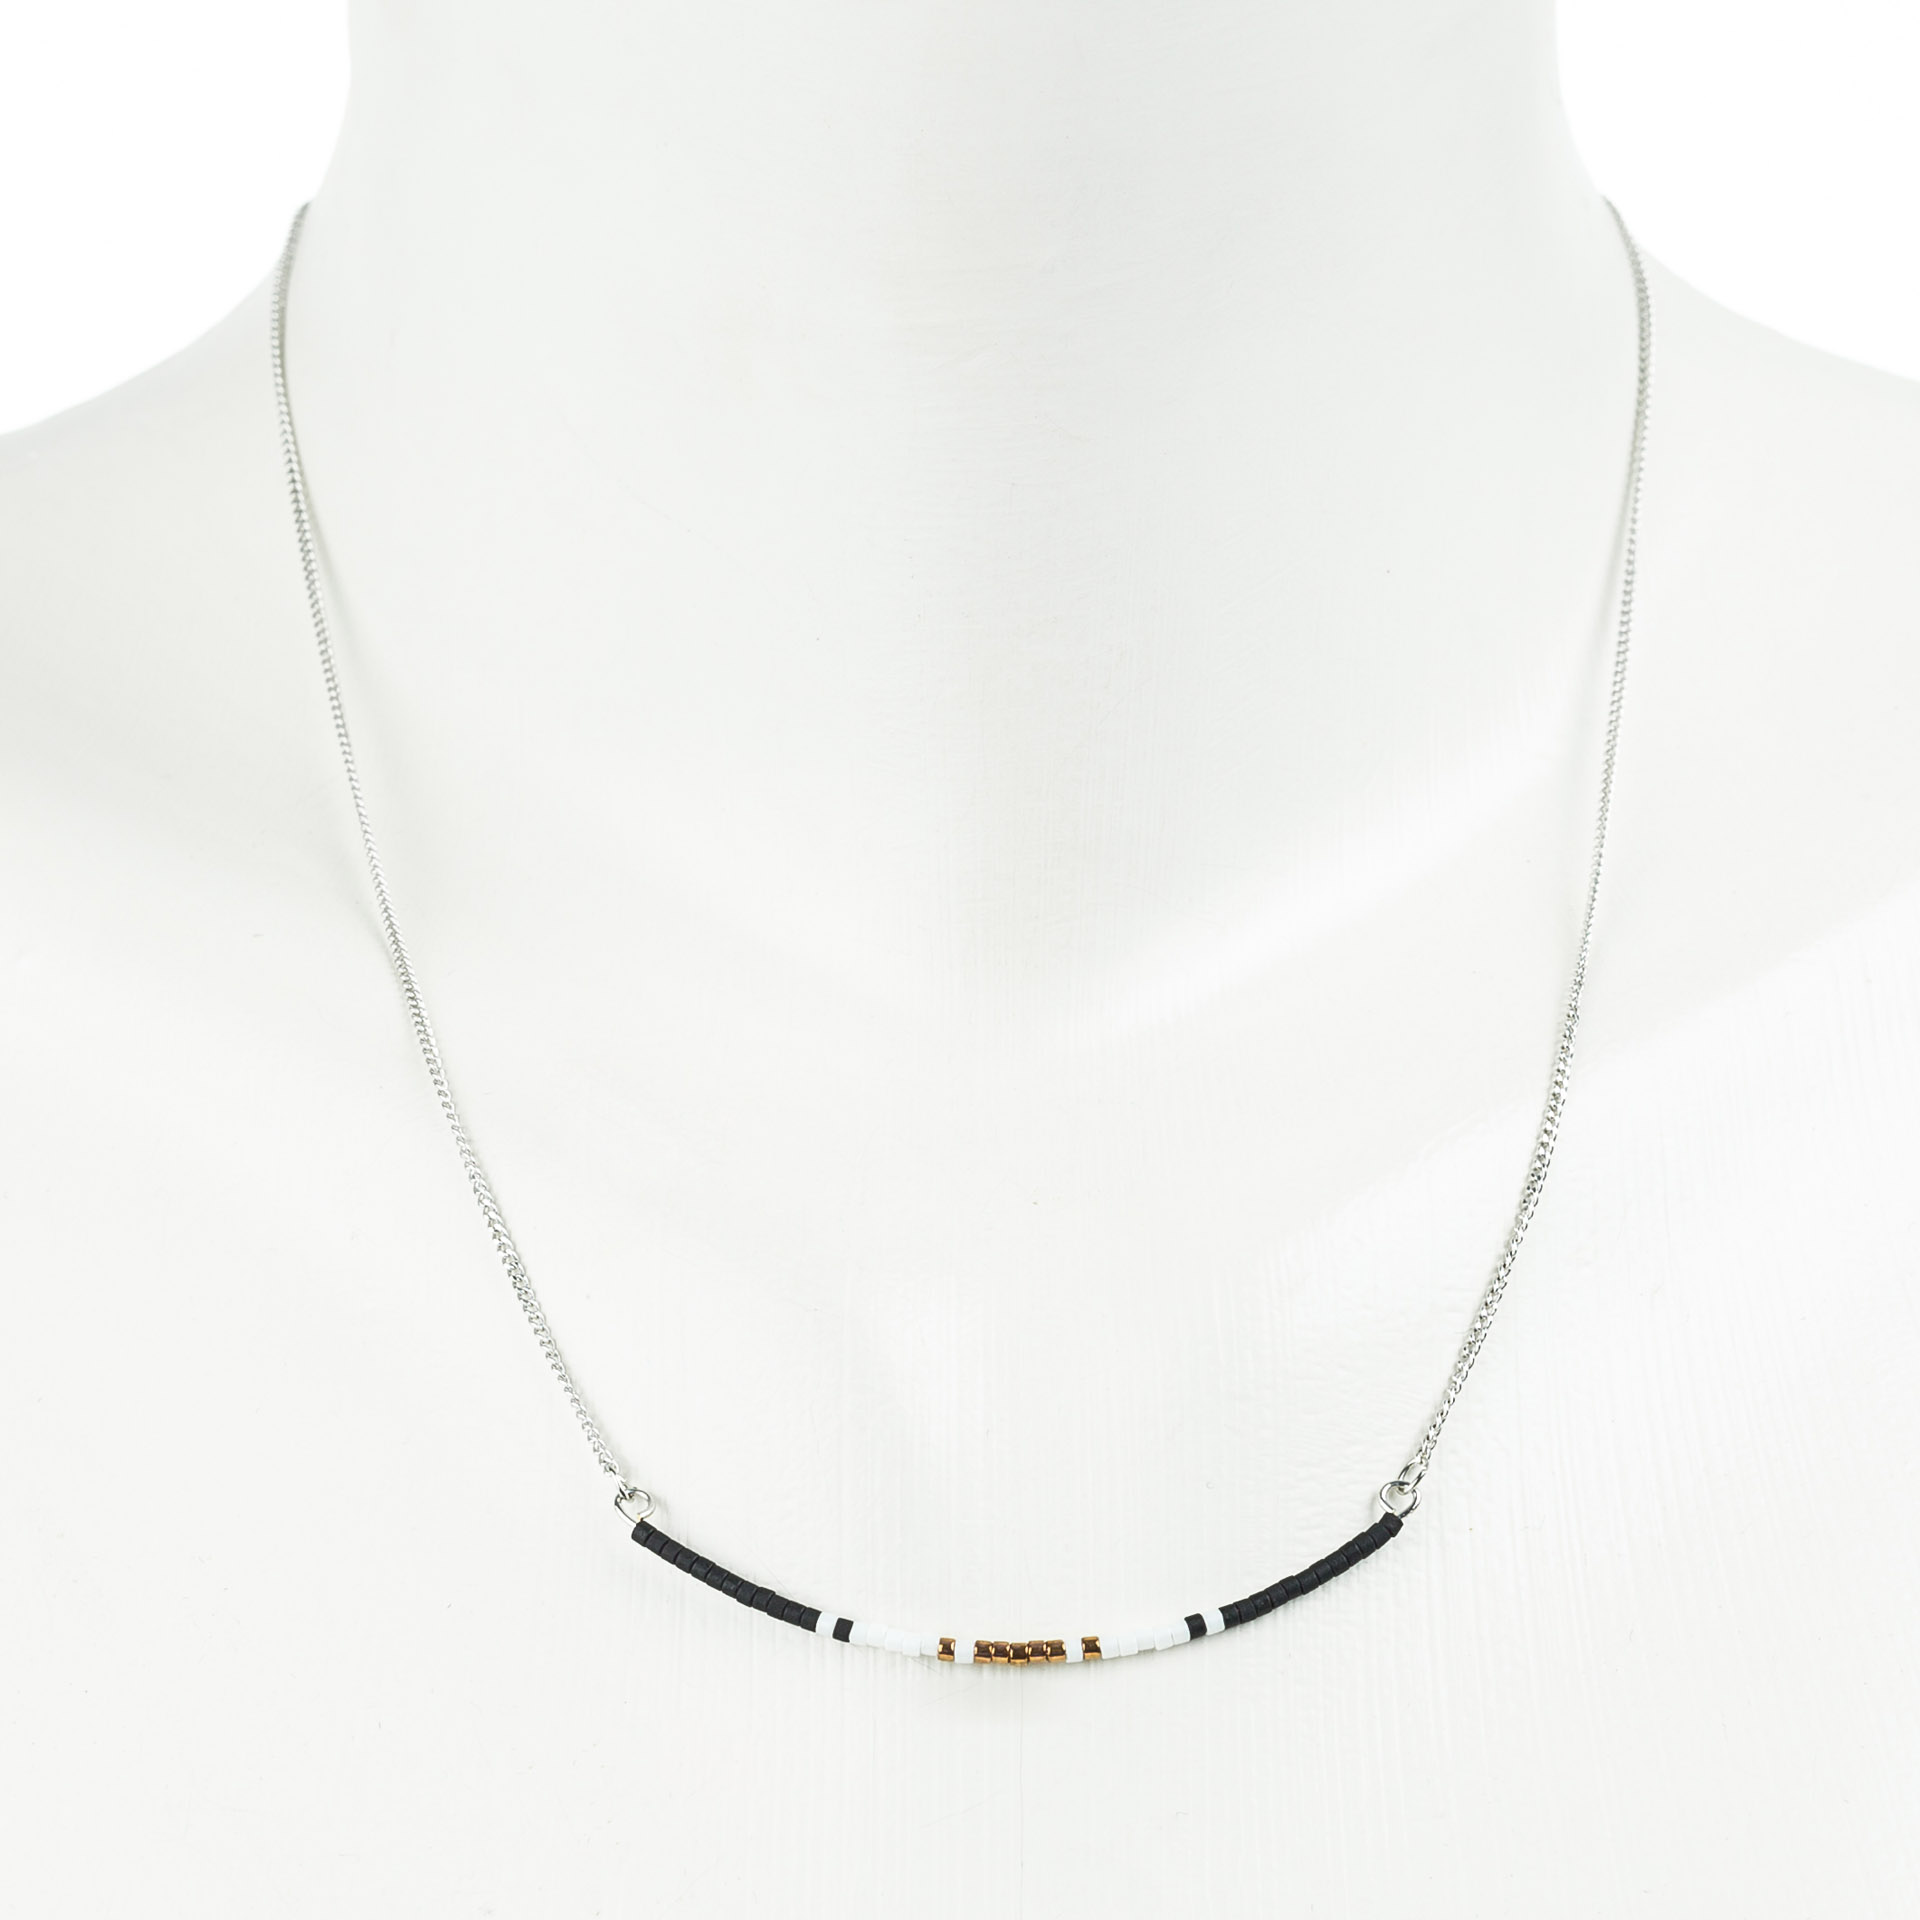 "Petite Beads" feine kurze Metallkette mit japan. Rocaillesperlen, schwarz-weiß, silberfarben